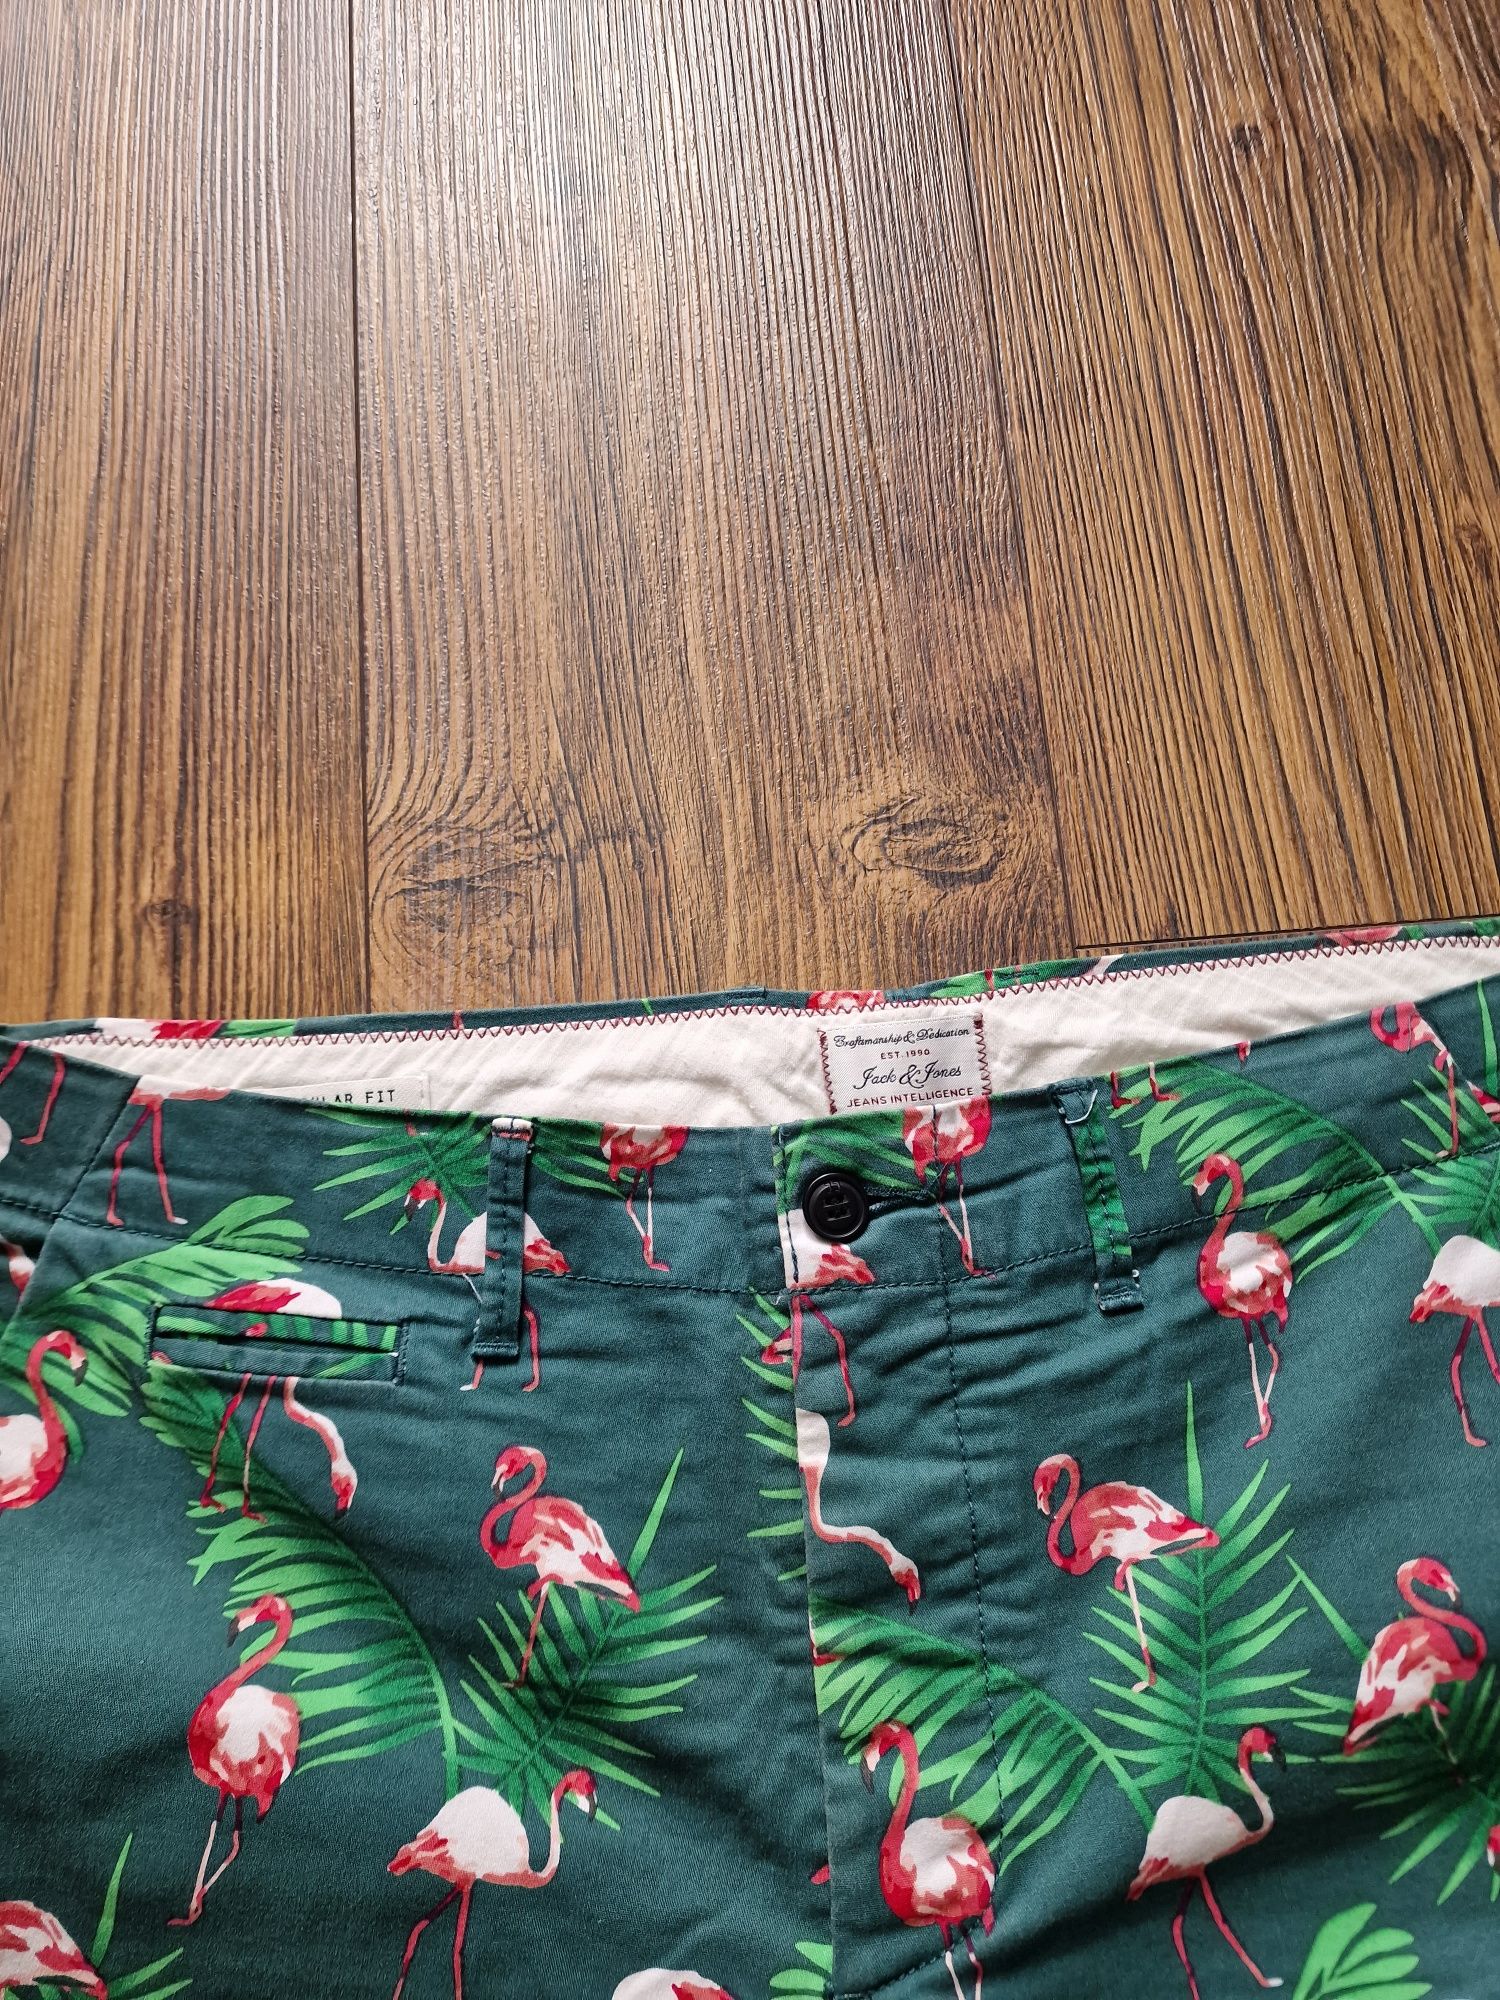 Страхотни мъжки  къси  панталони JACK & JONES  на фламинго, размер 36